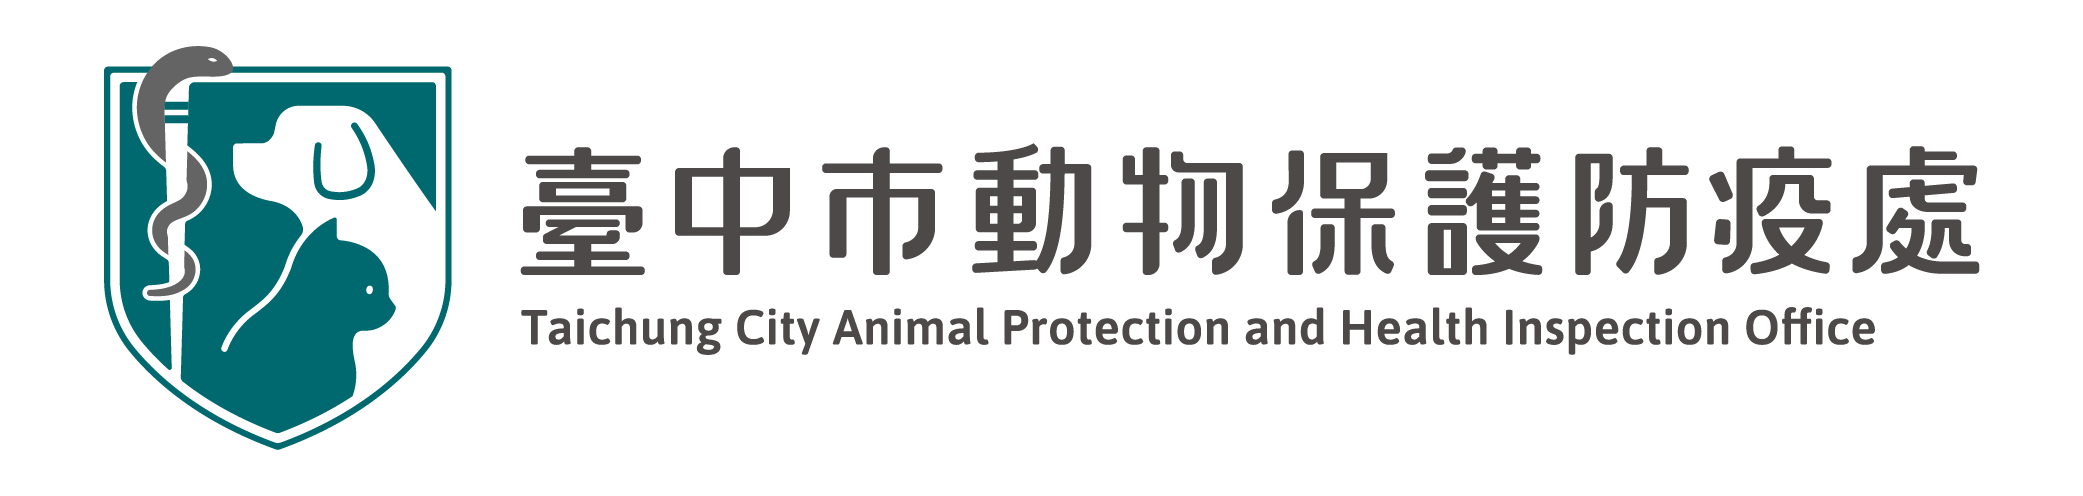 臺中市動物保護防疫處:回首頁